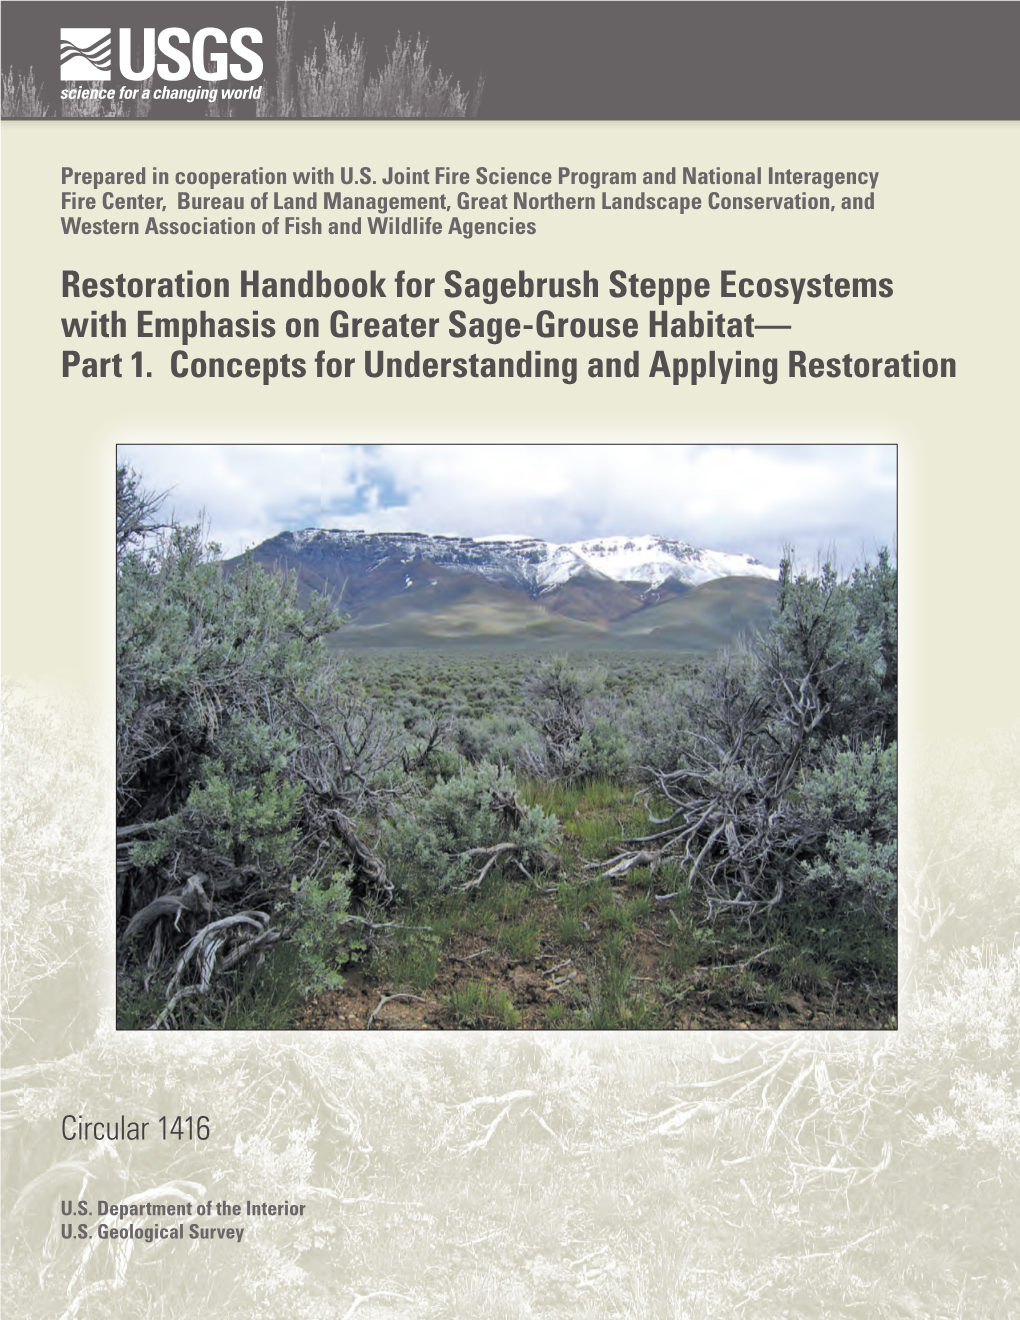 Restoration Handbook for Sagebrush-Steppe, Part 1